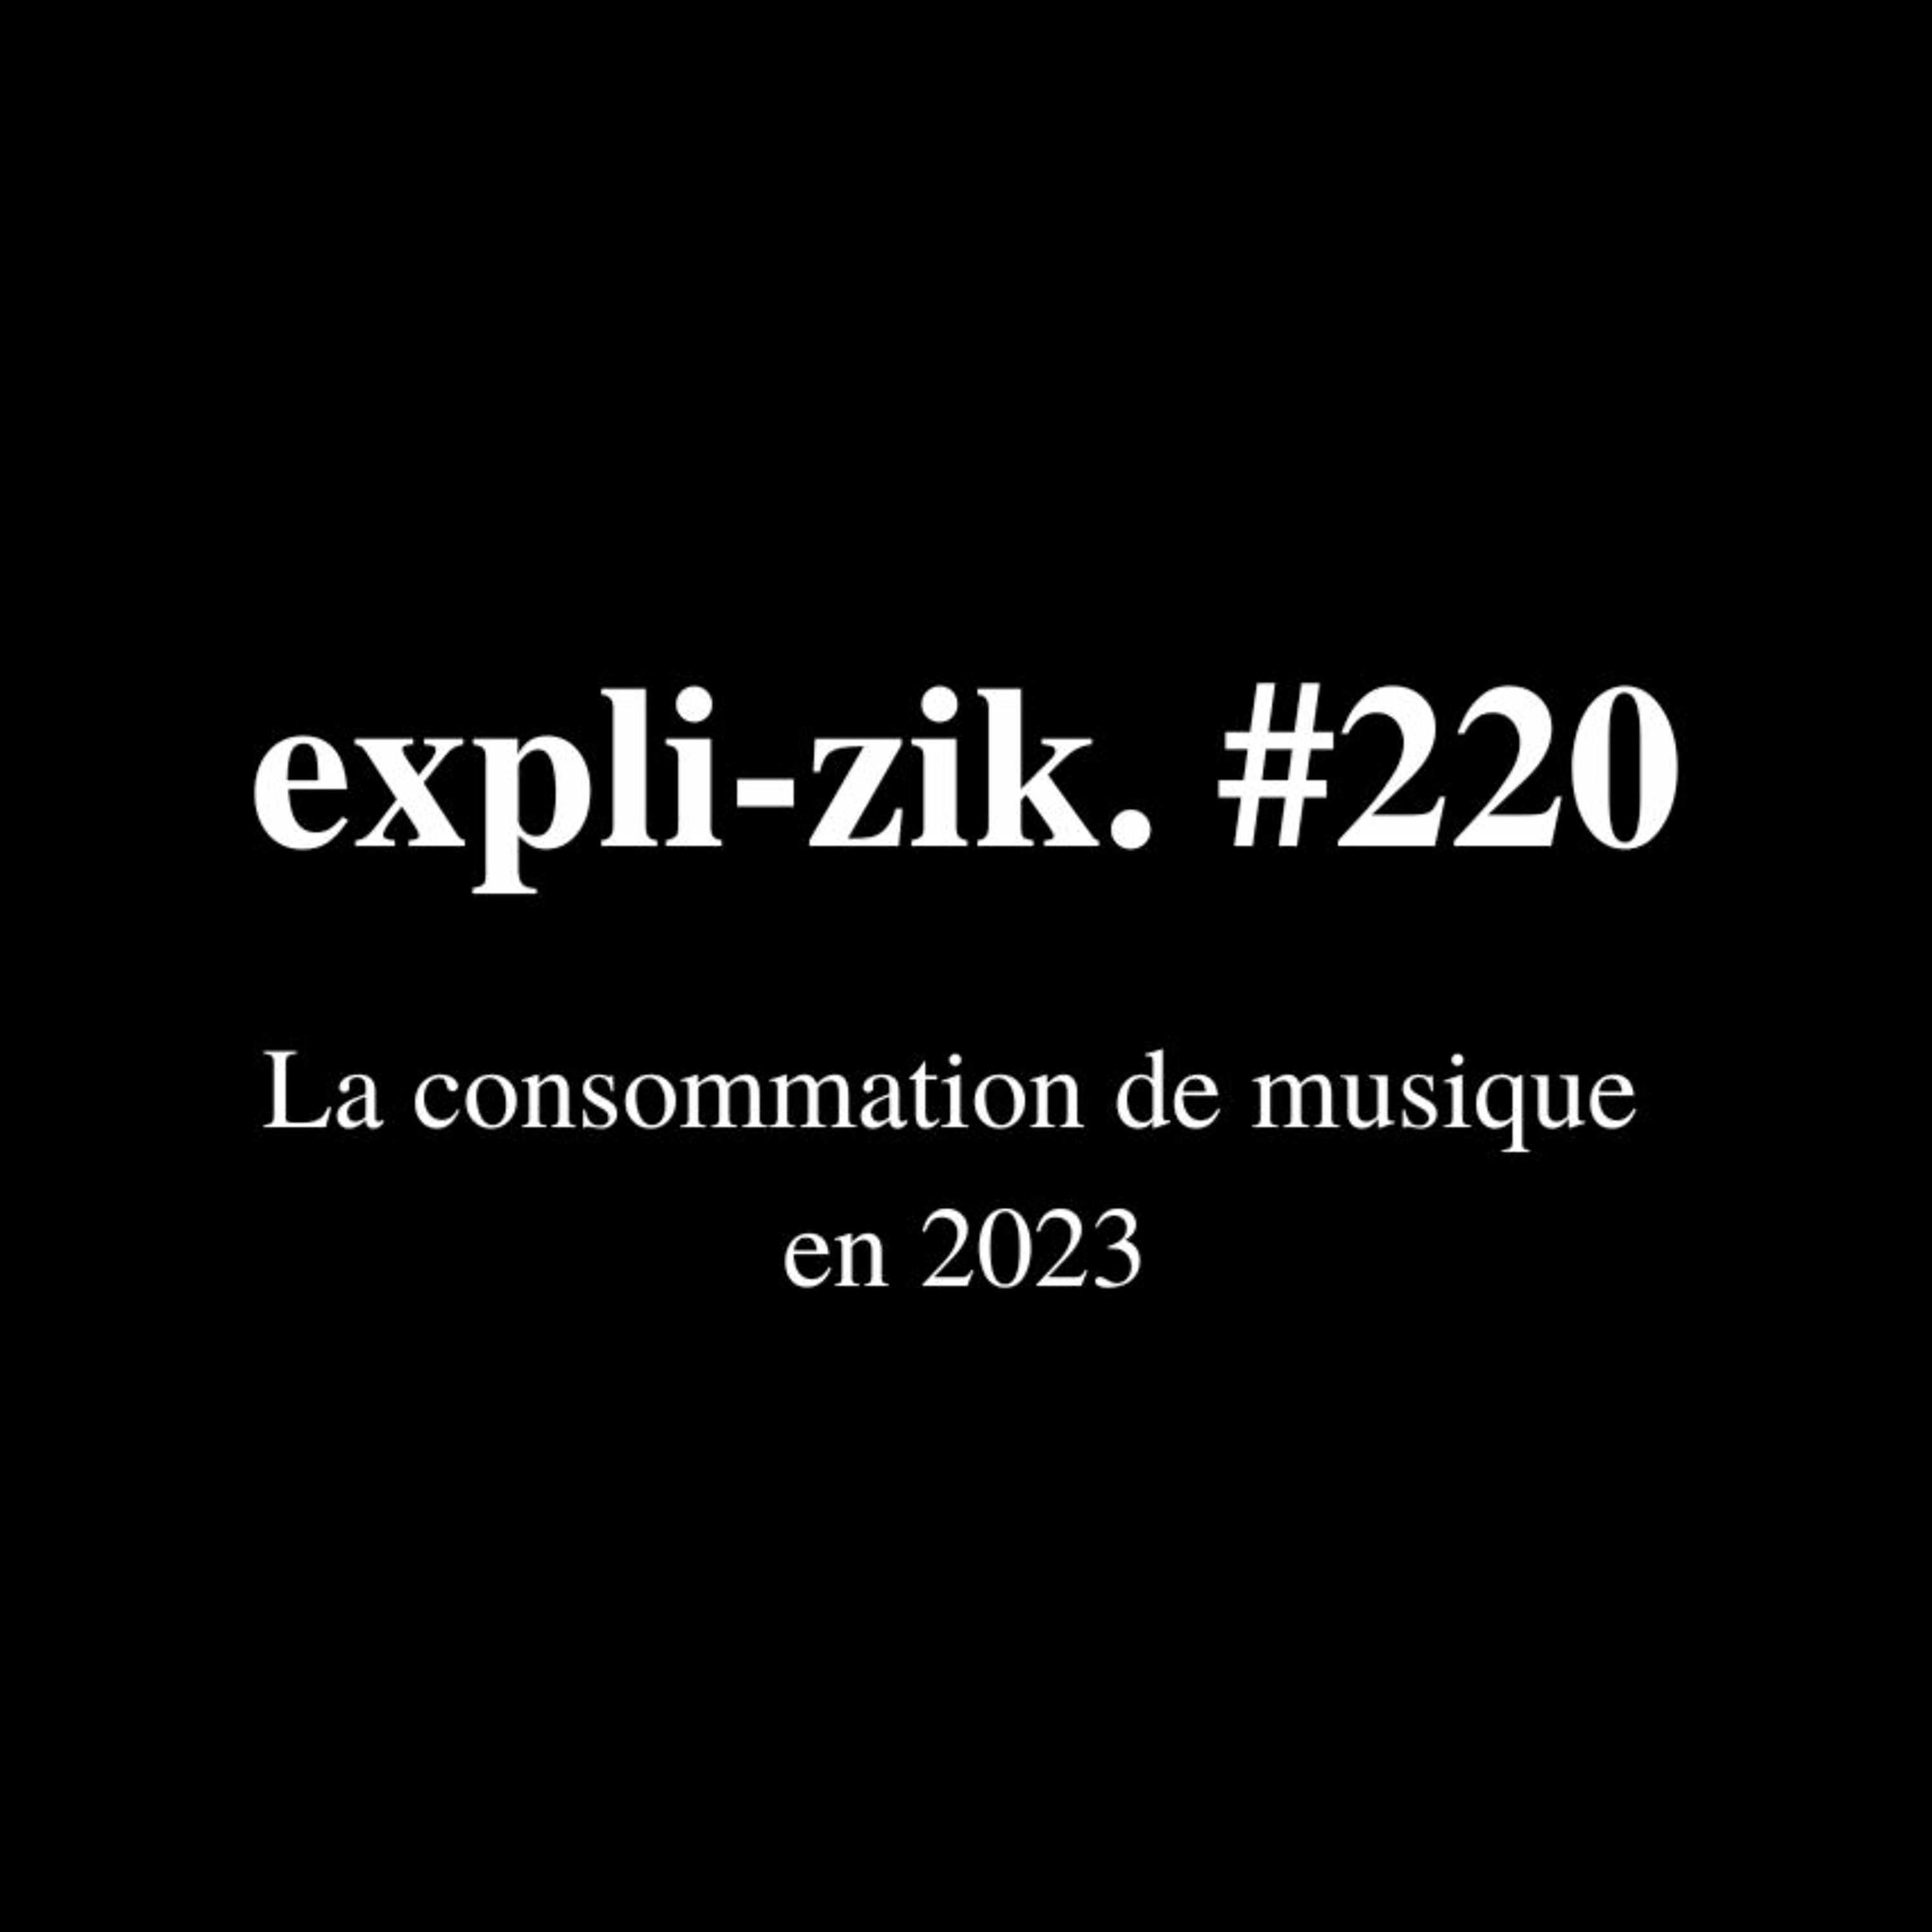 La consommation de musique en 2023